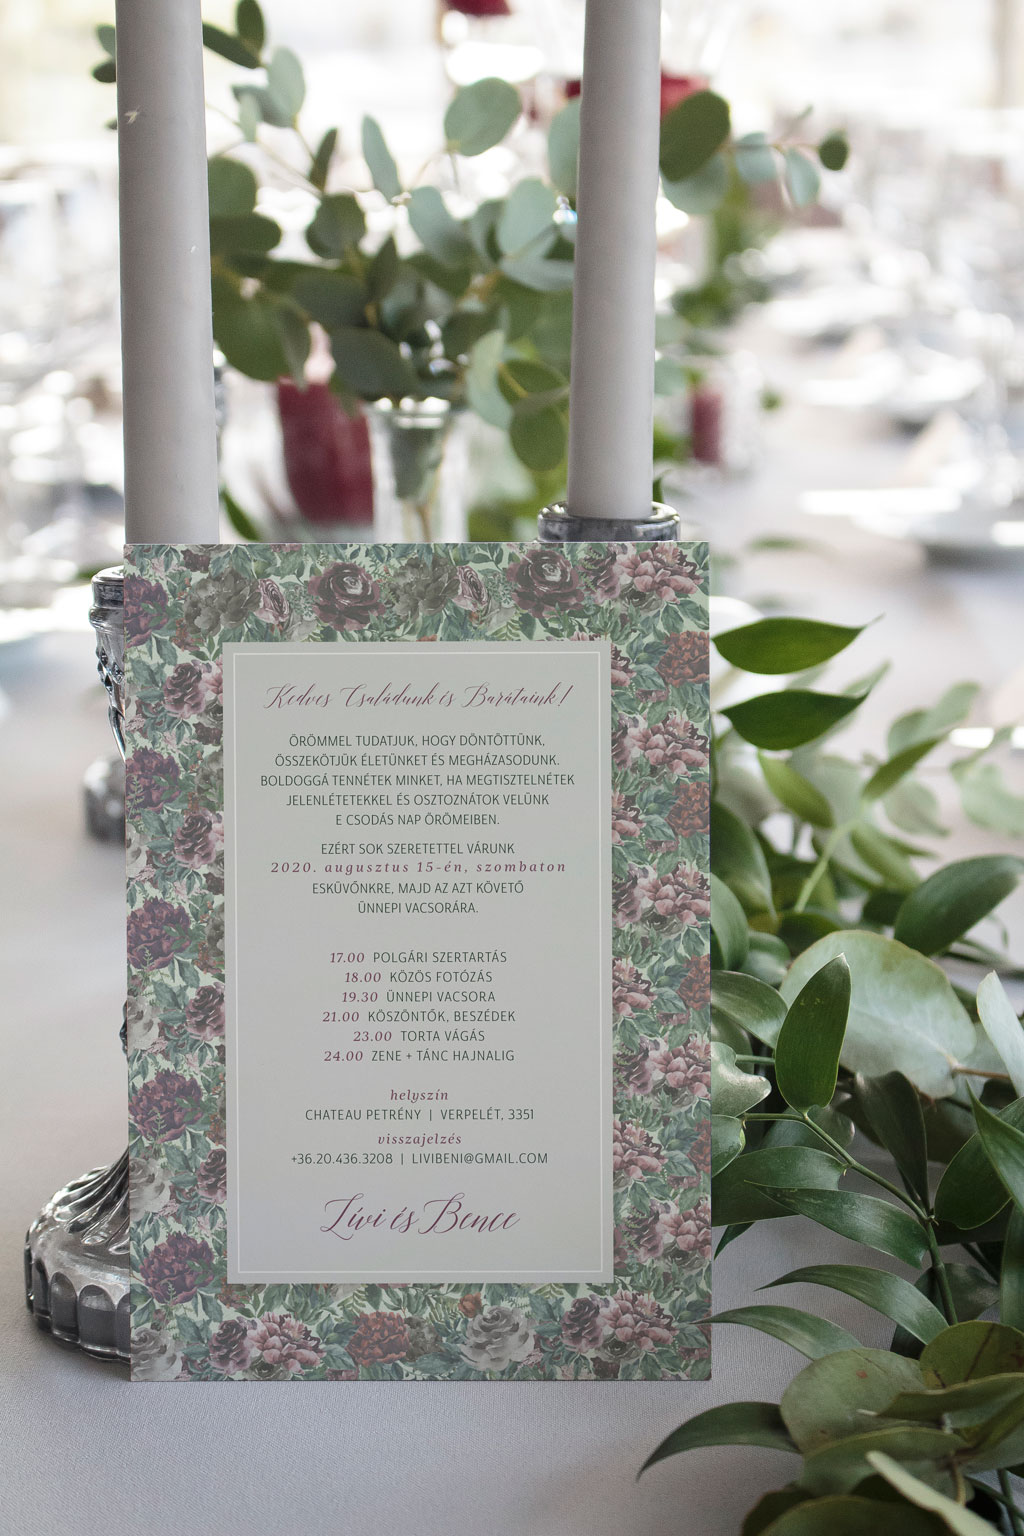 Virágos páfrányos erdei esküvői meghívó rengeteg zöld növénnyel, elegáns sötétlila és bordó virágokkal, halvány zöld alnyomattal és modern tipográfiával.